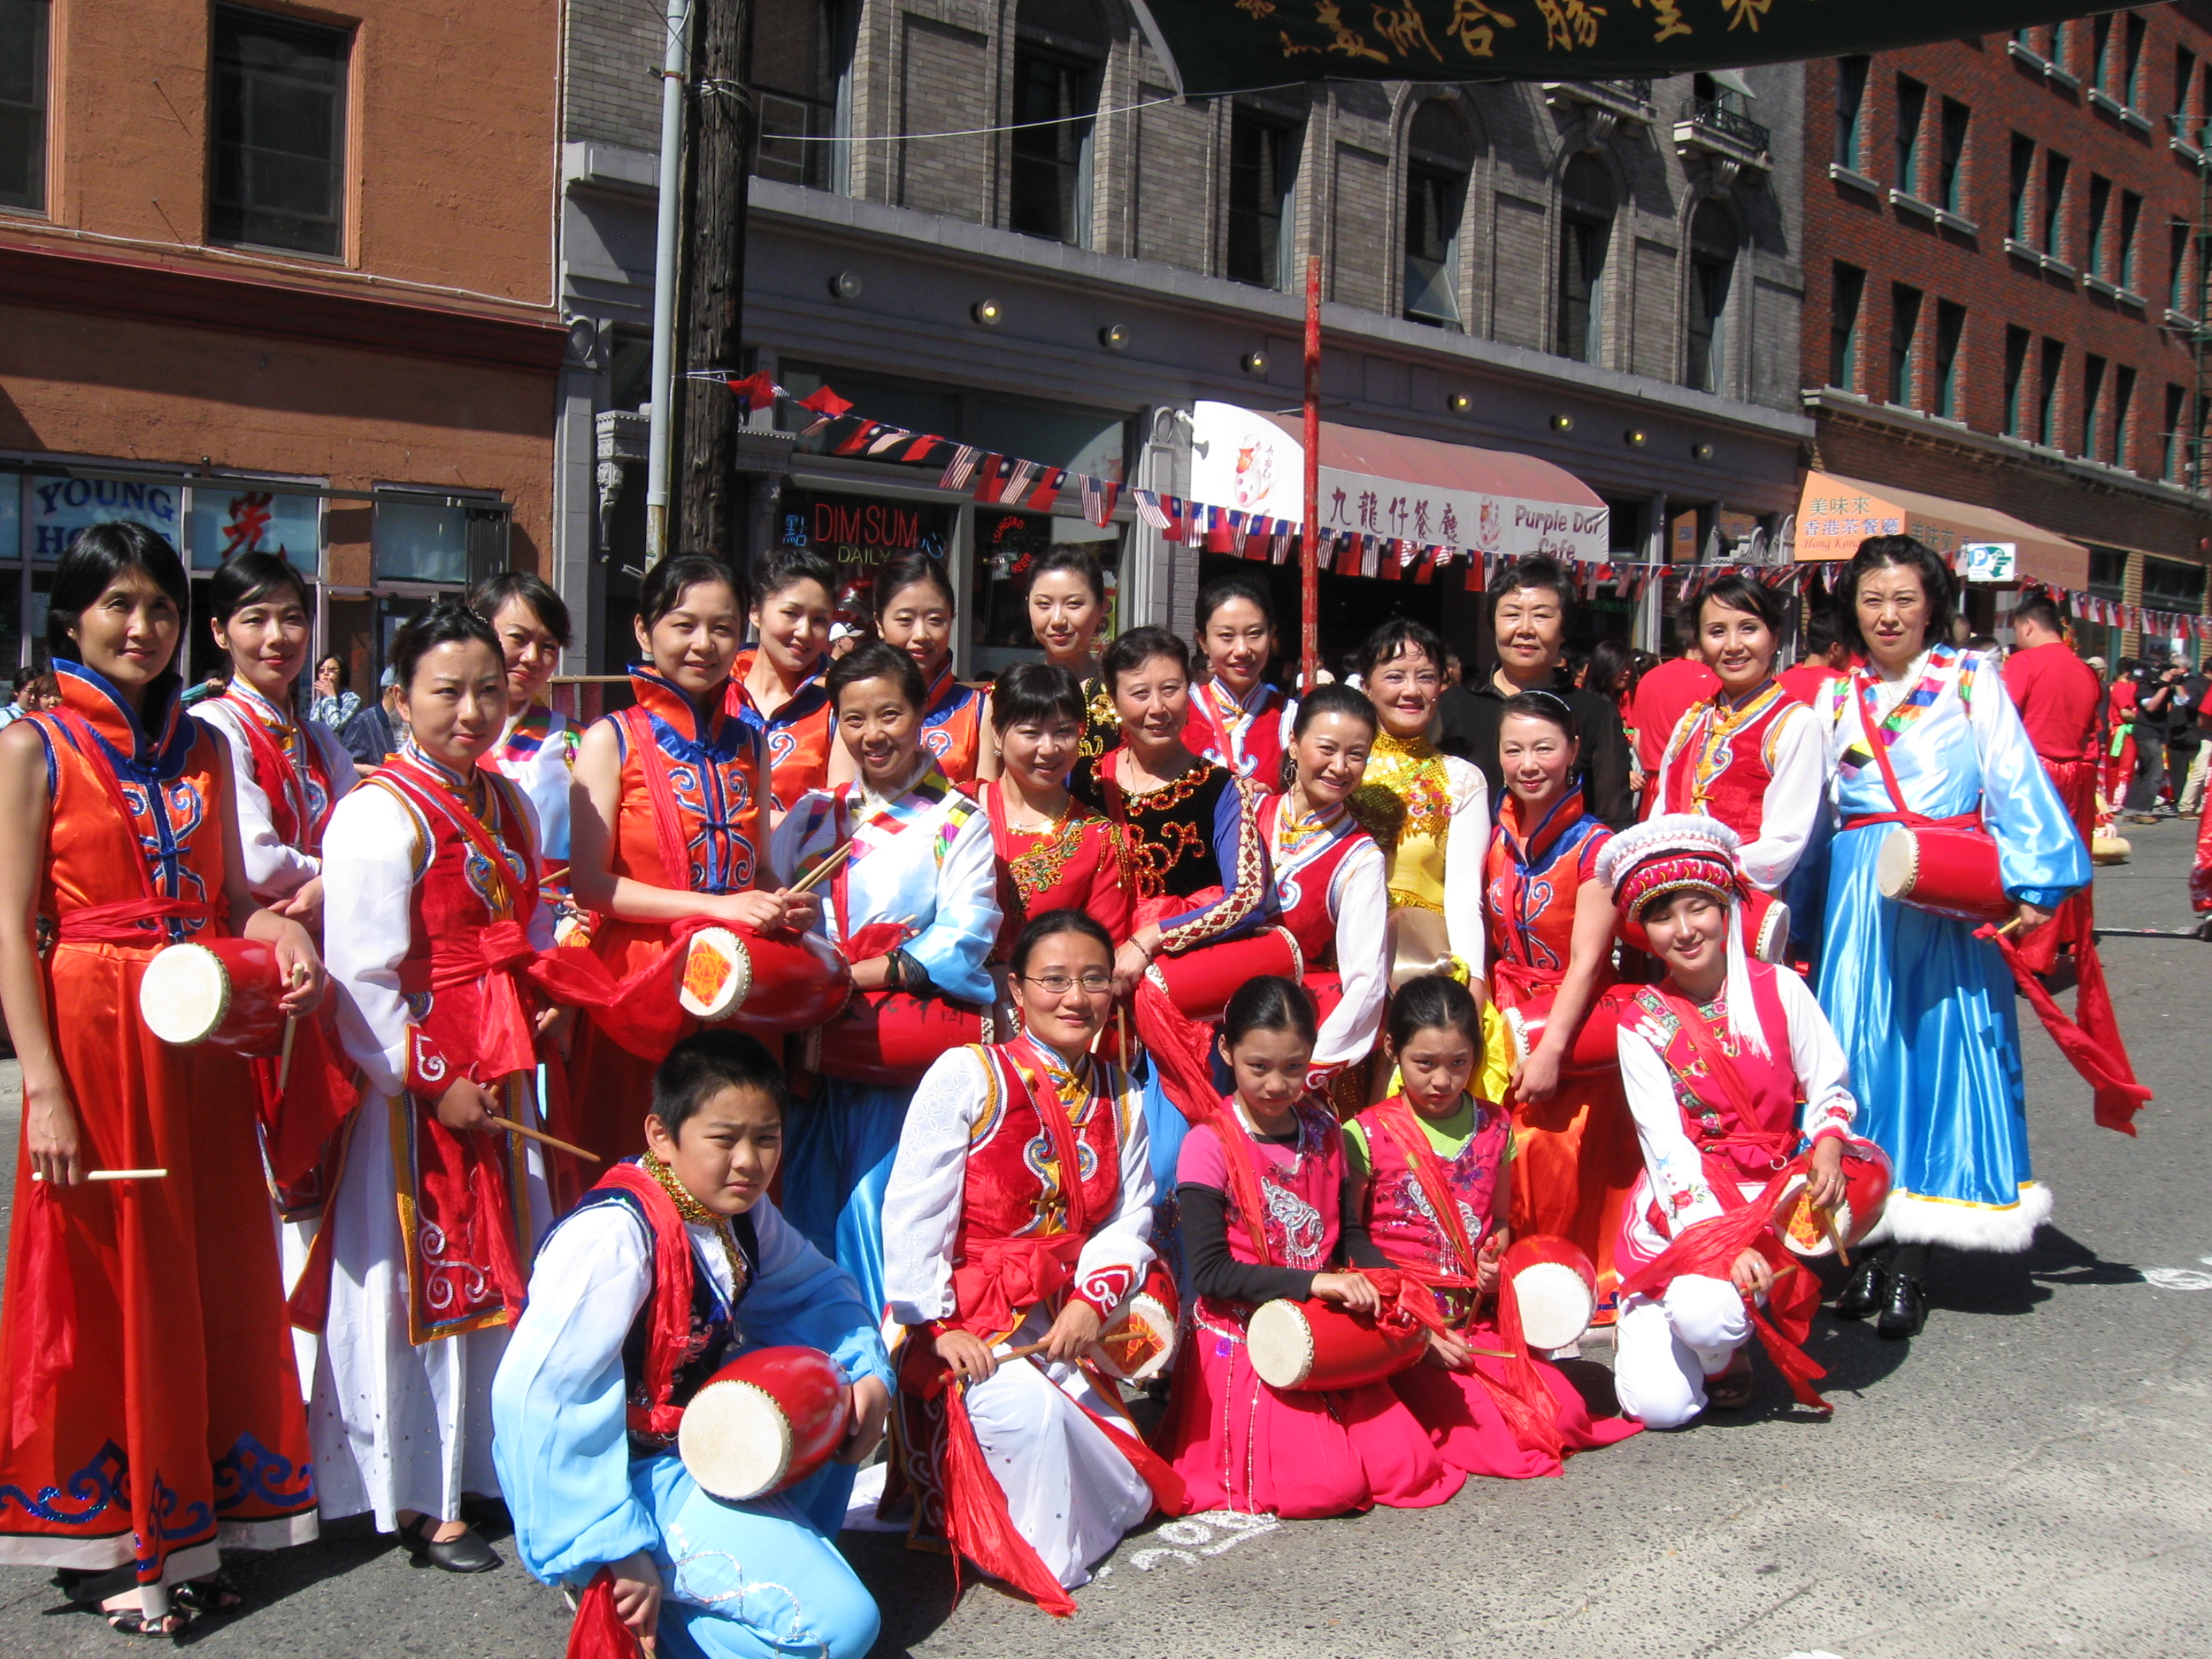 2012 Chinatown Seafair Parade Image 226